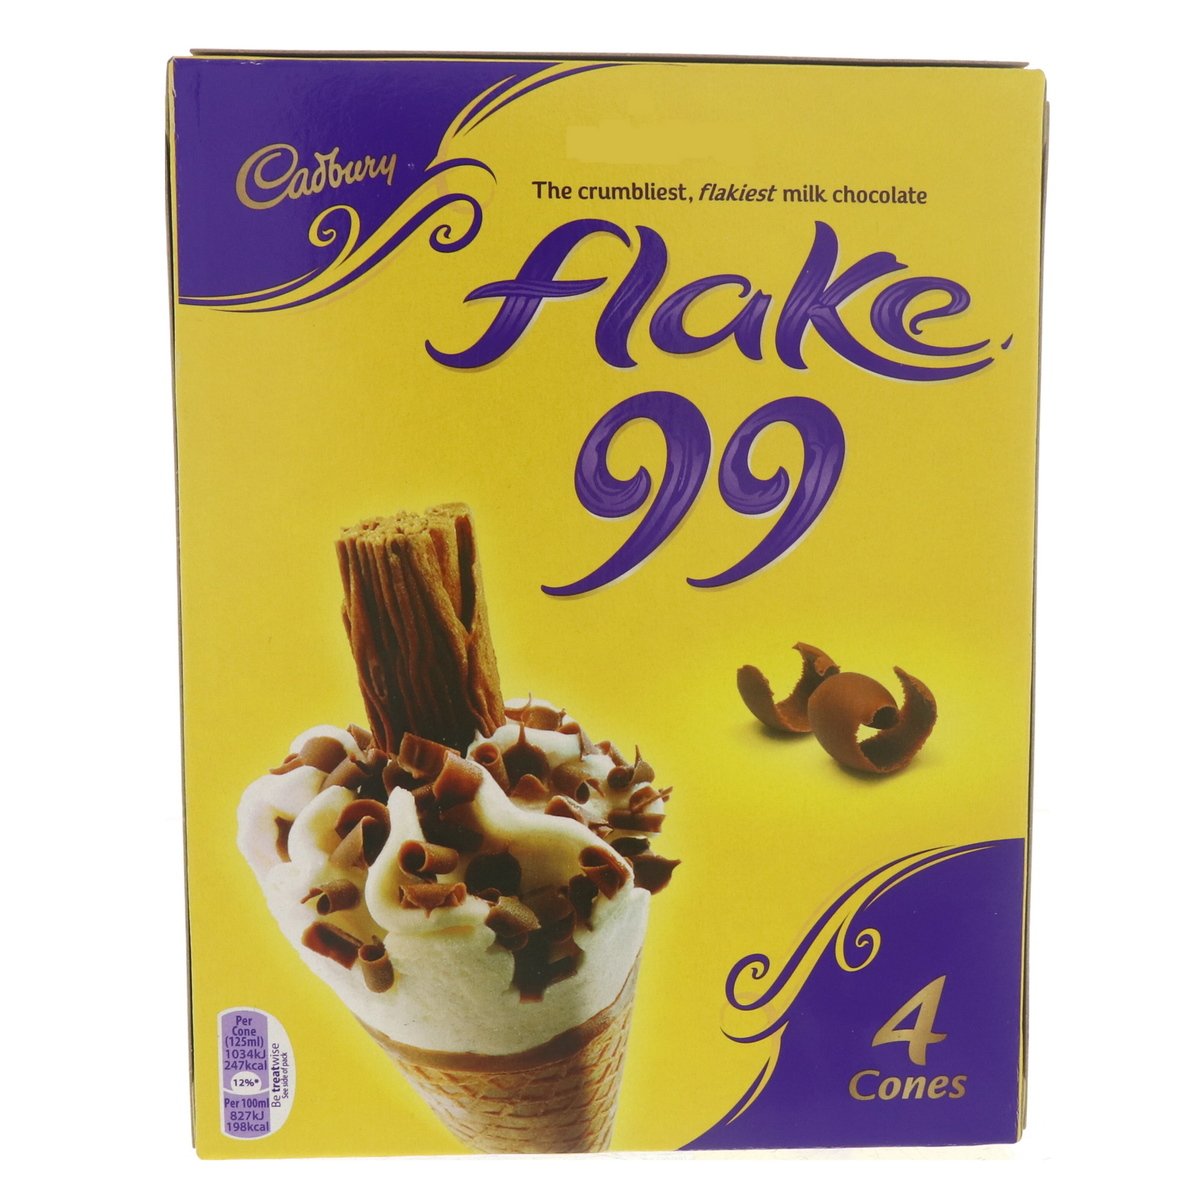 اشتري قم بشراء Cadbury Cone Flake 99 4 x 125 ml Online at Best Price من الموقع - من لولو هايبر ماركت Ice Cream Impulse في الامارات